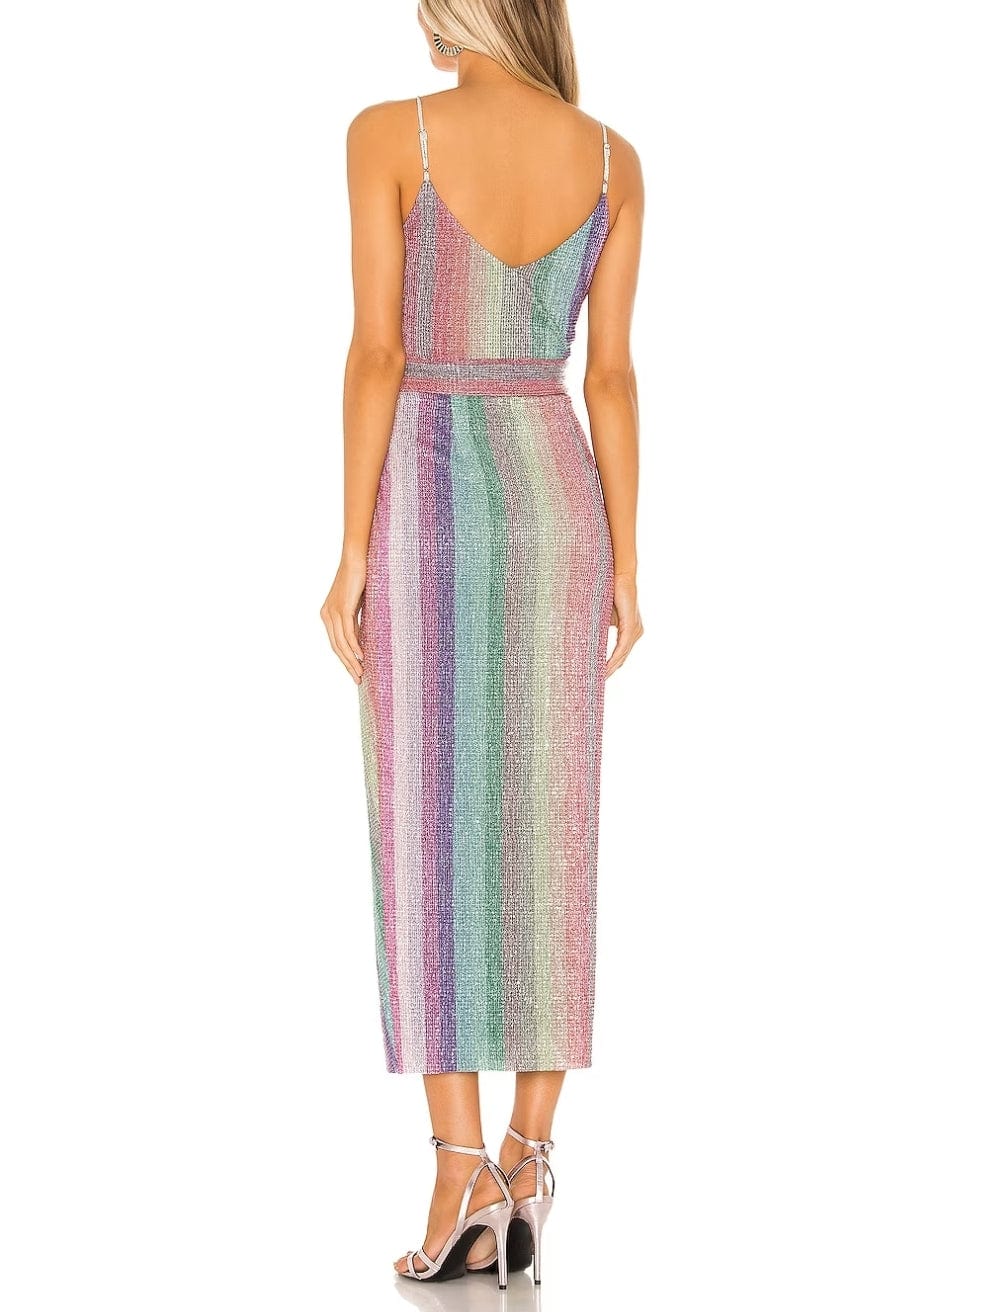 Saylor Meghan Sequin Rainbow Dress